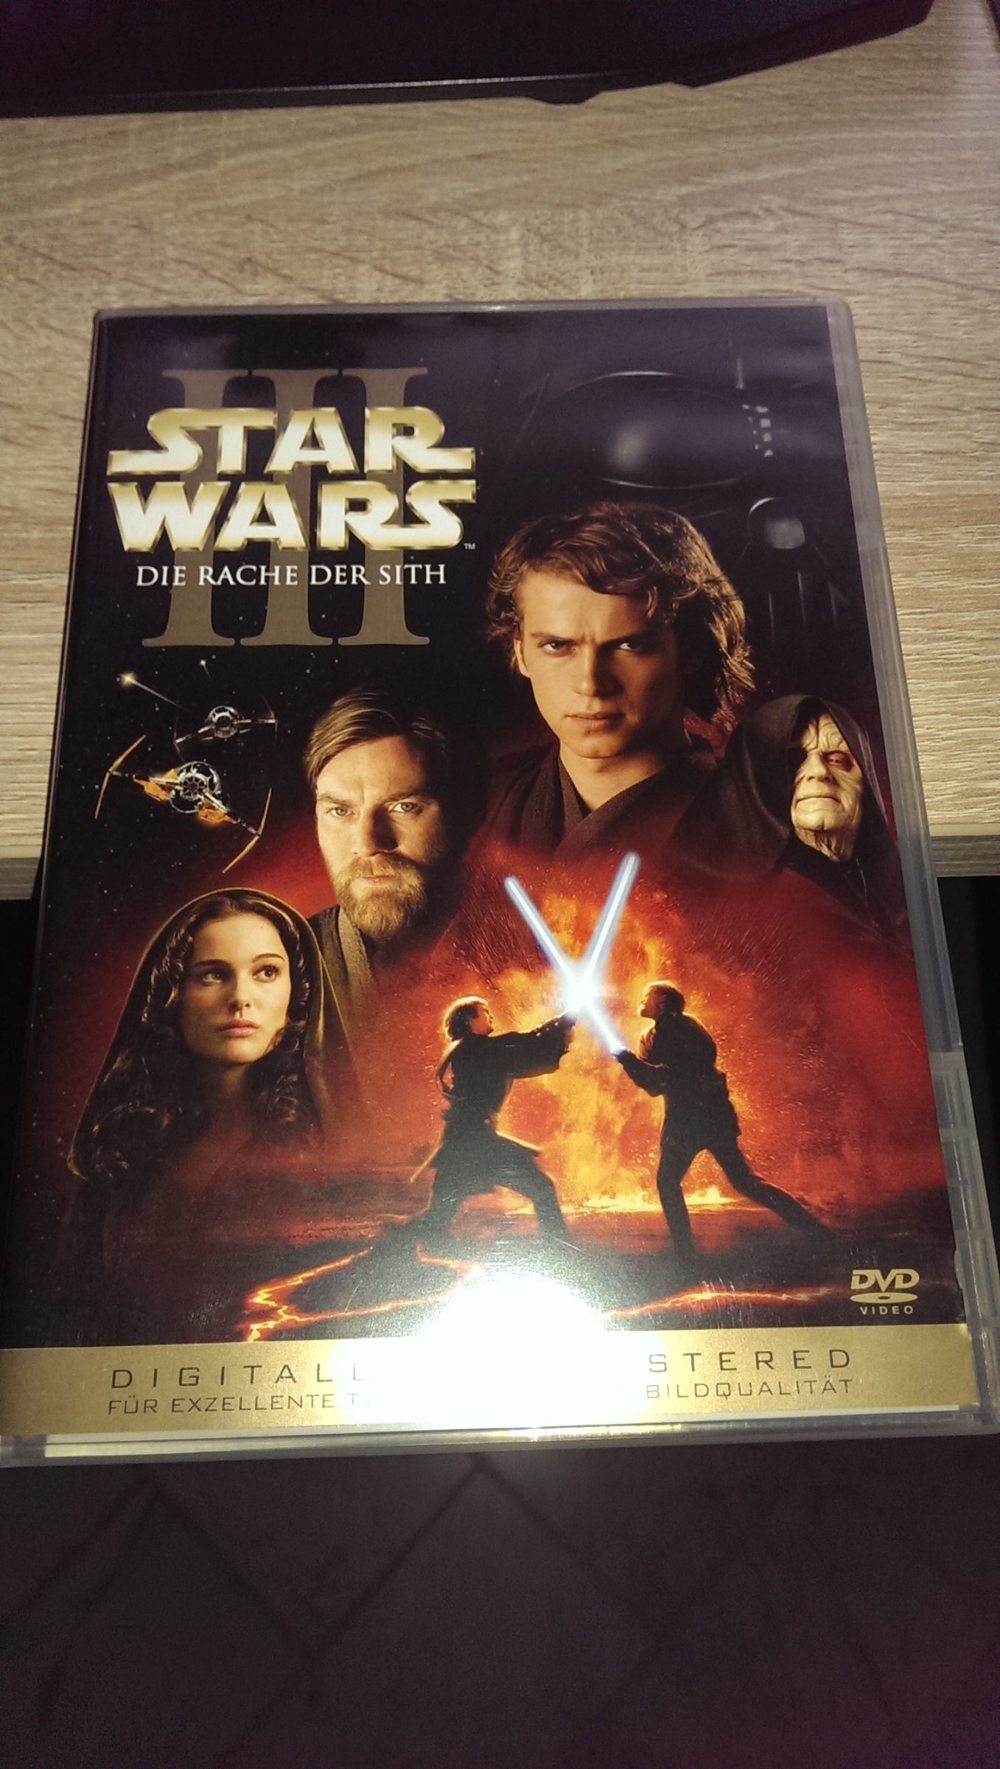 Star Wars Episode 3 - Die Rache der Sith / 2 DVDs Dig. Mast. Edition